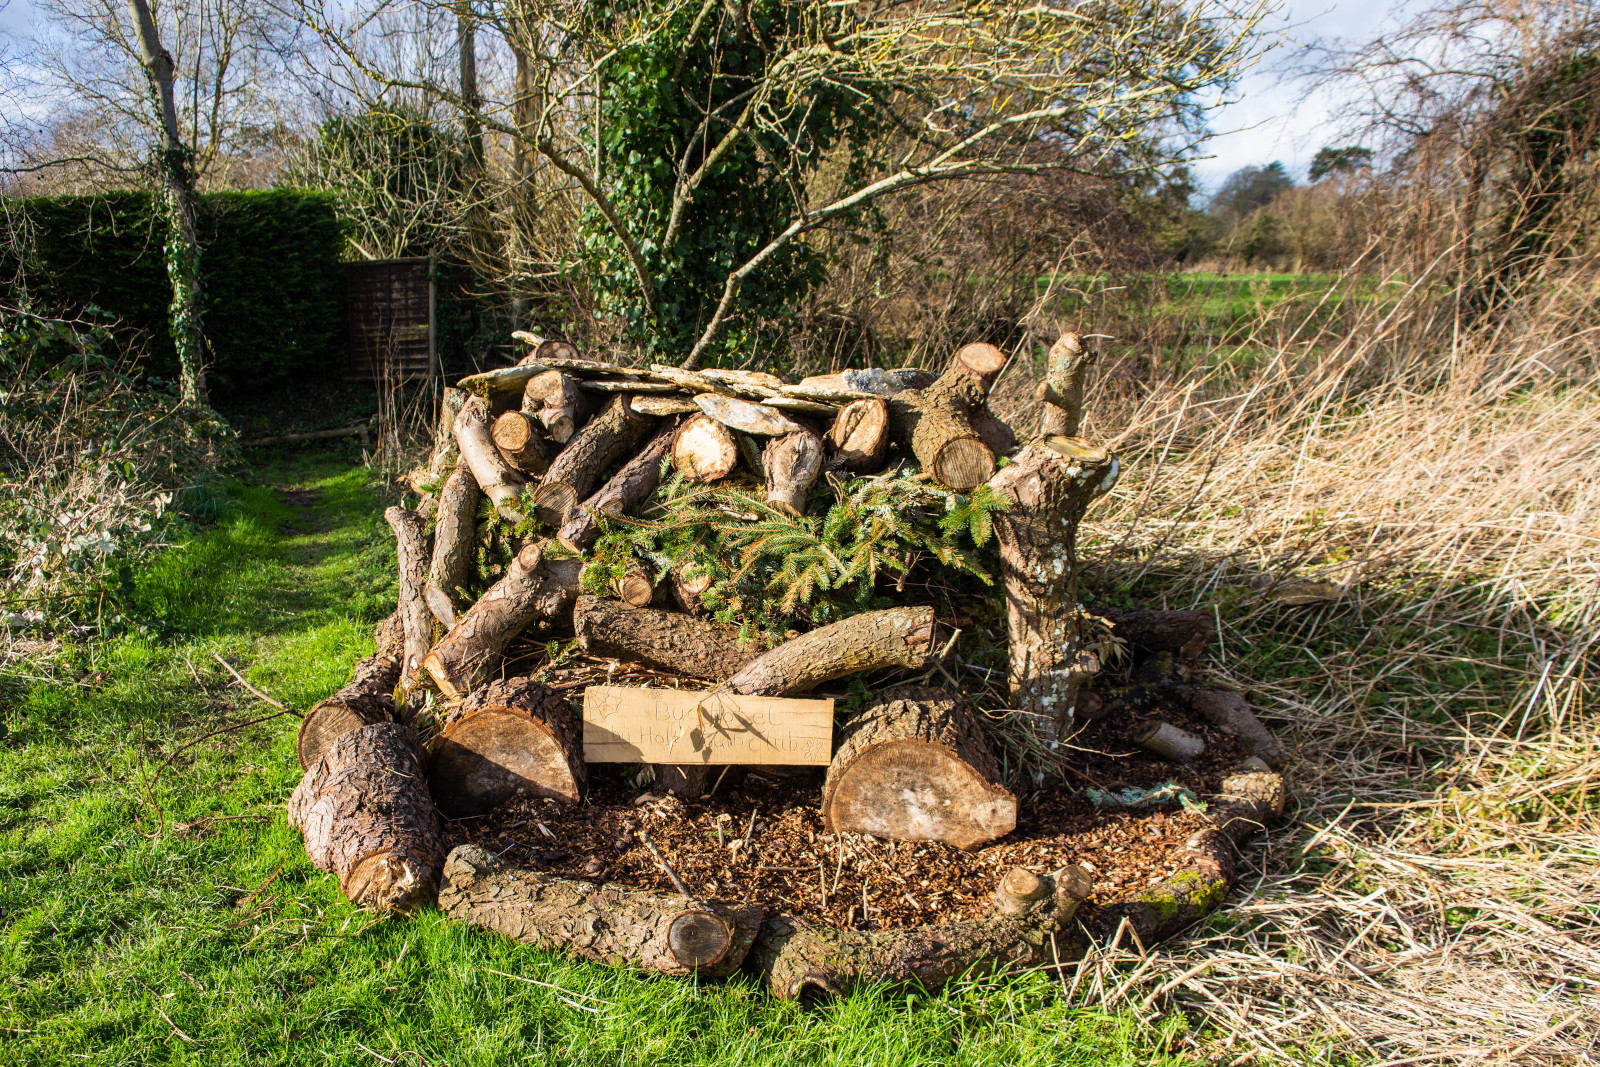 Make a log-pile habitat